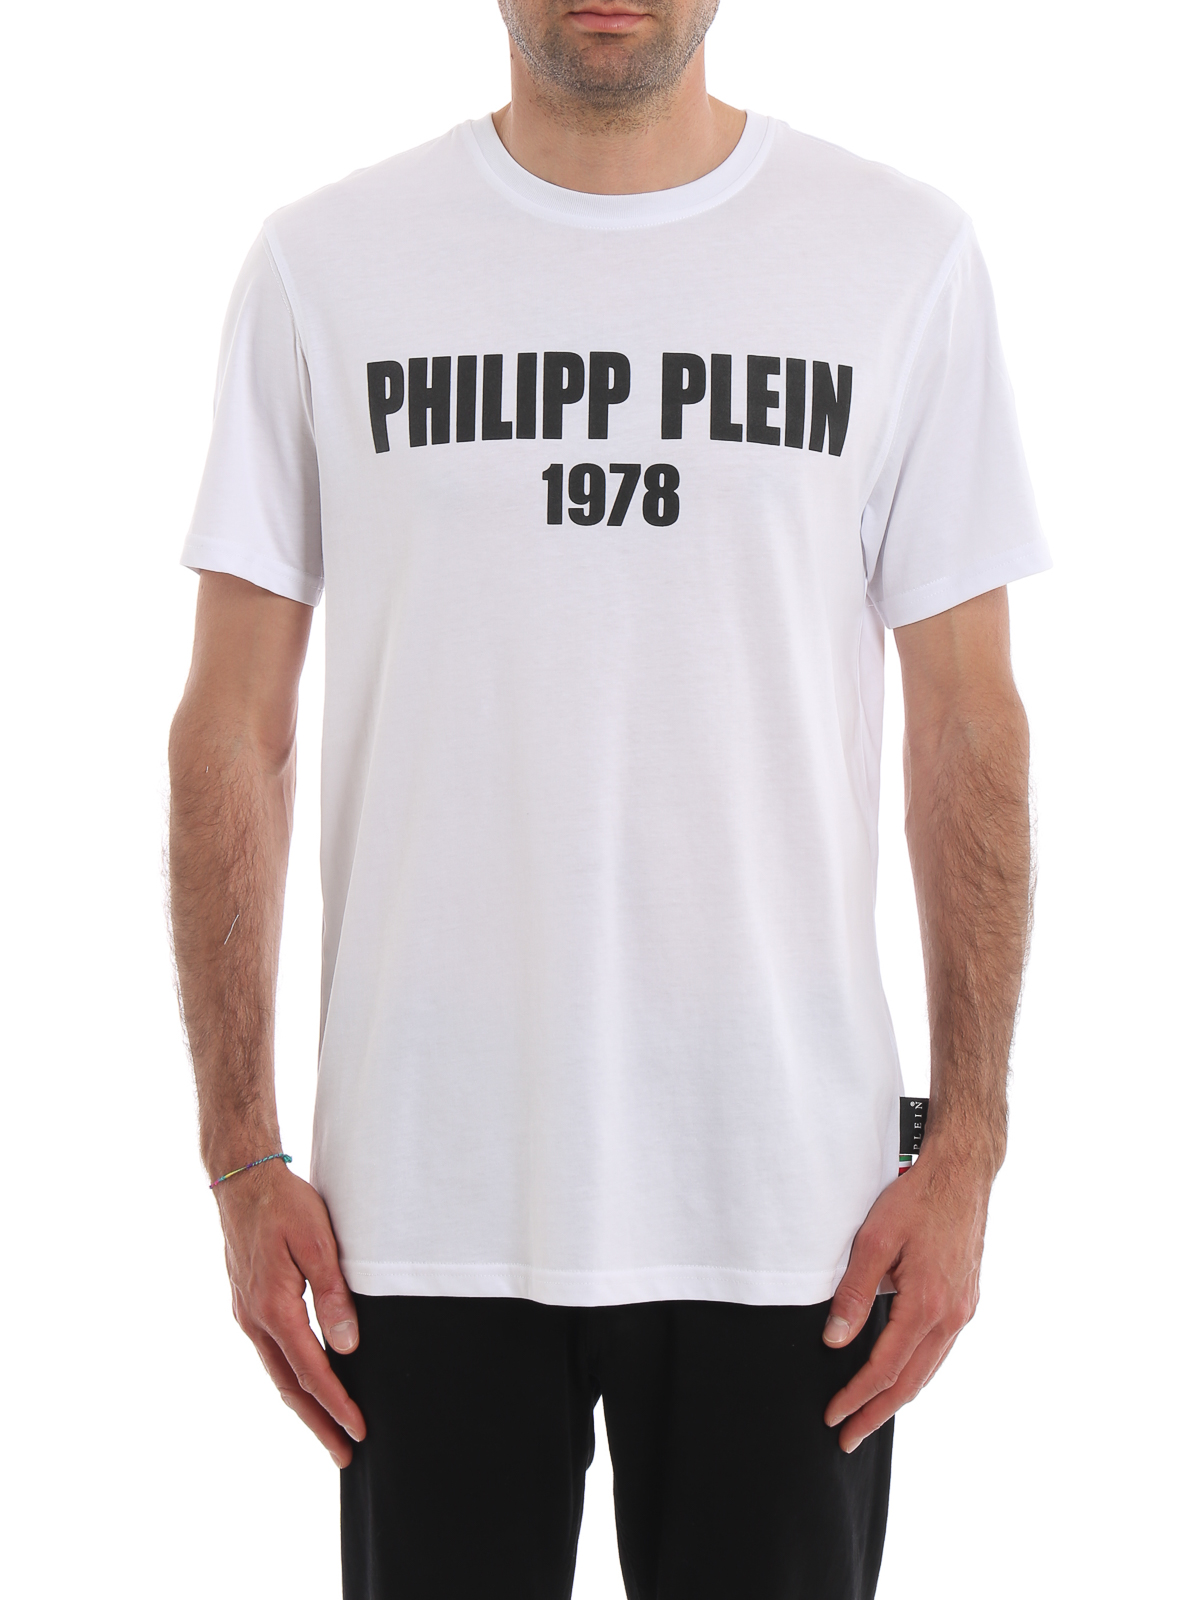 Philipp Plein - PP 1978 short sleeve 